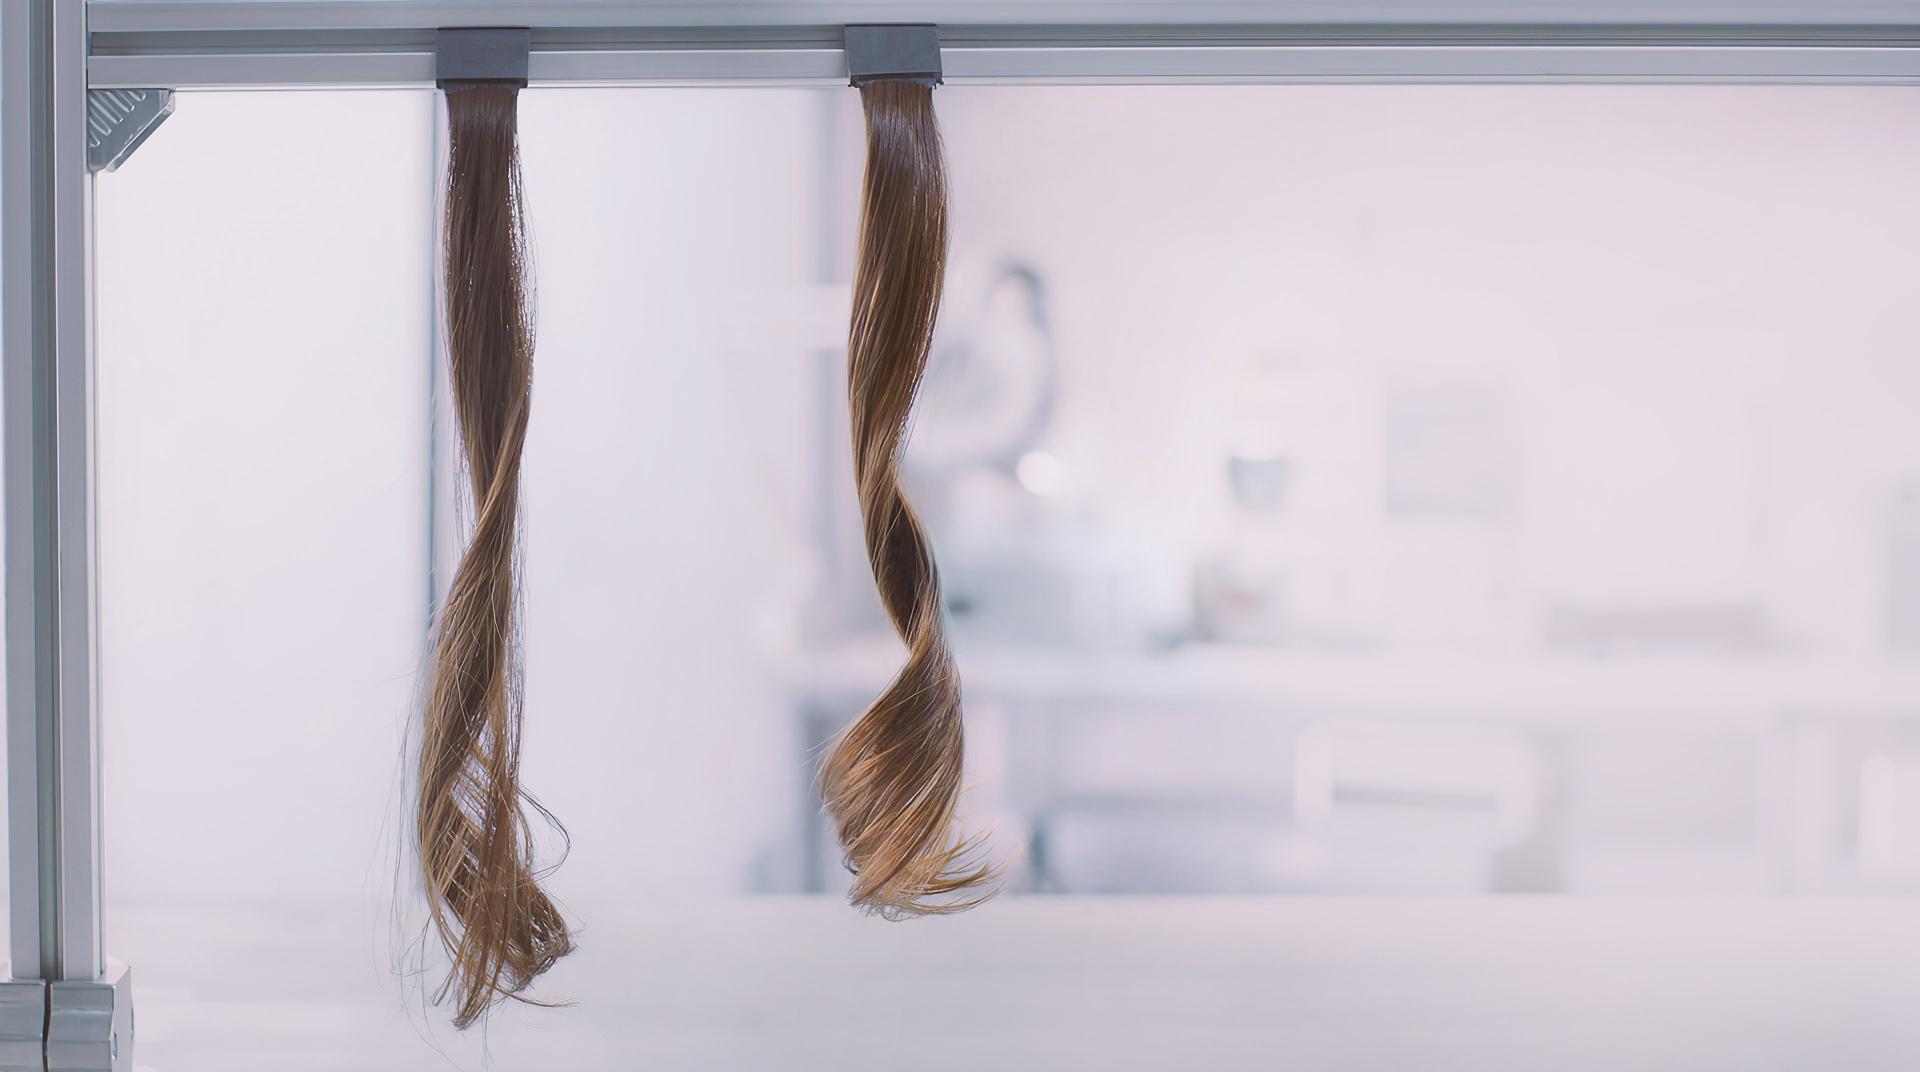 Trenzas de cabello rizado colgadas en el laboratorio científico